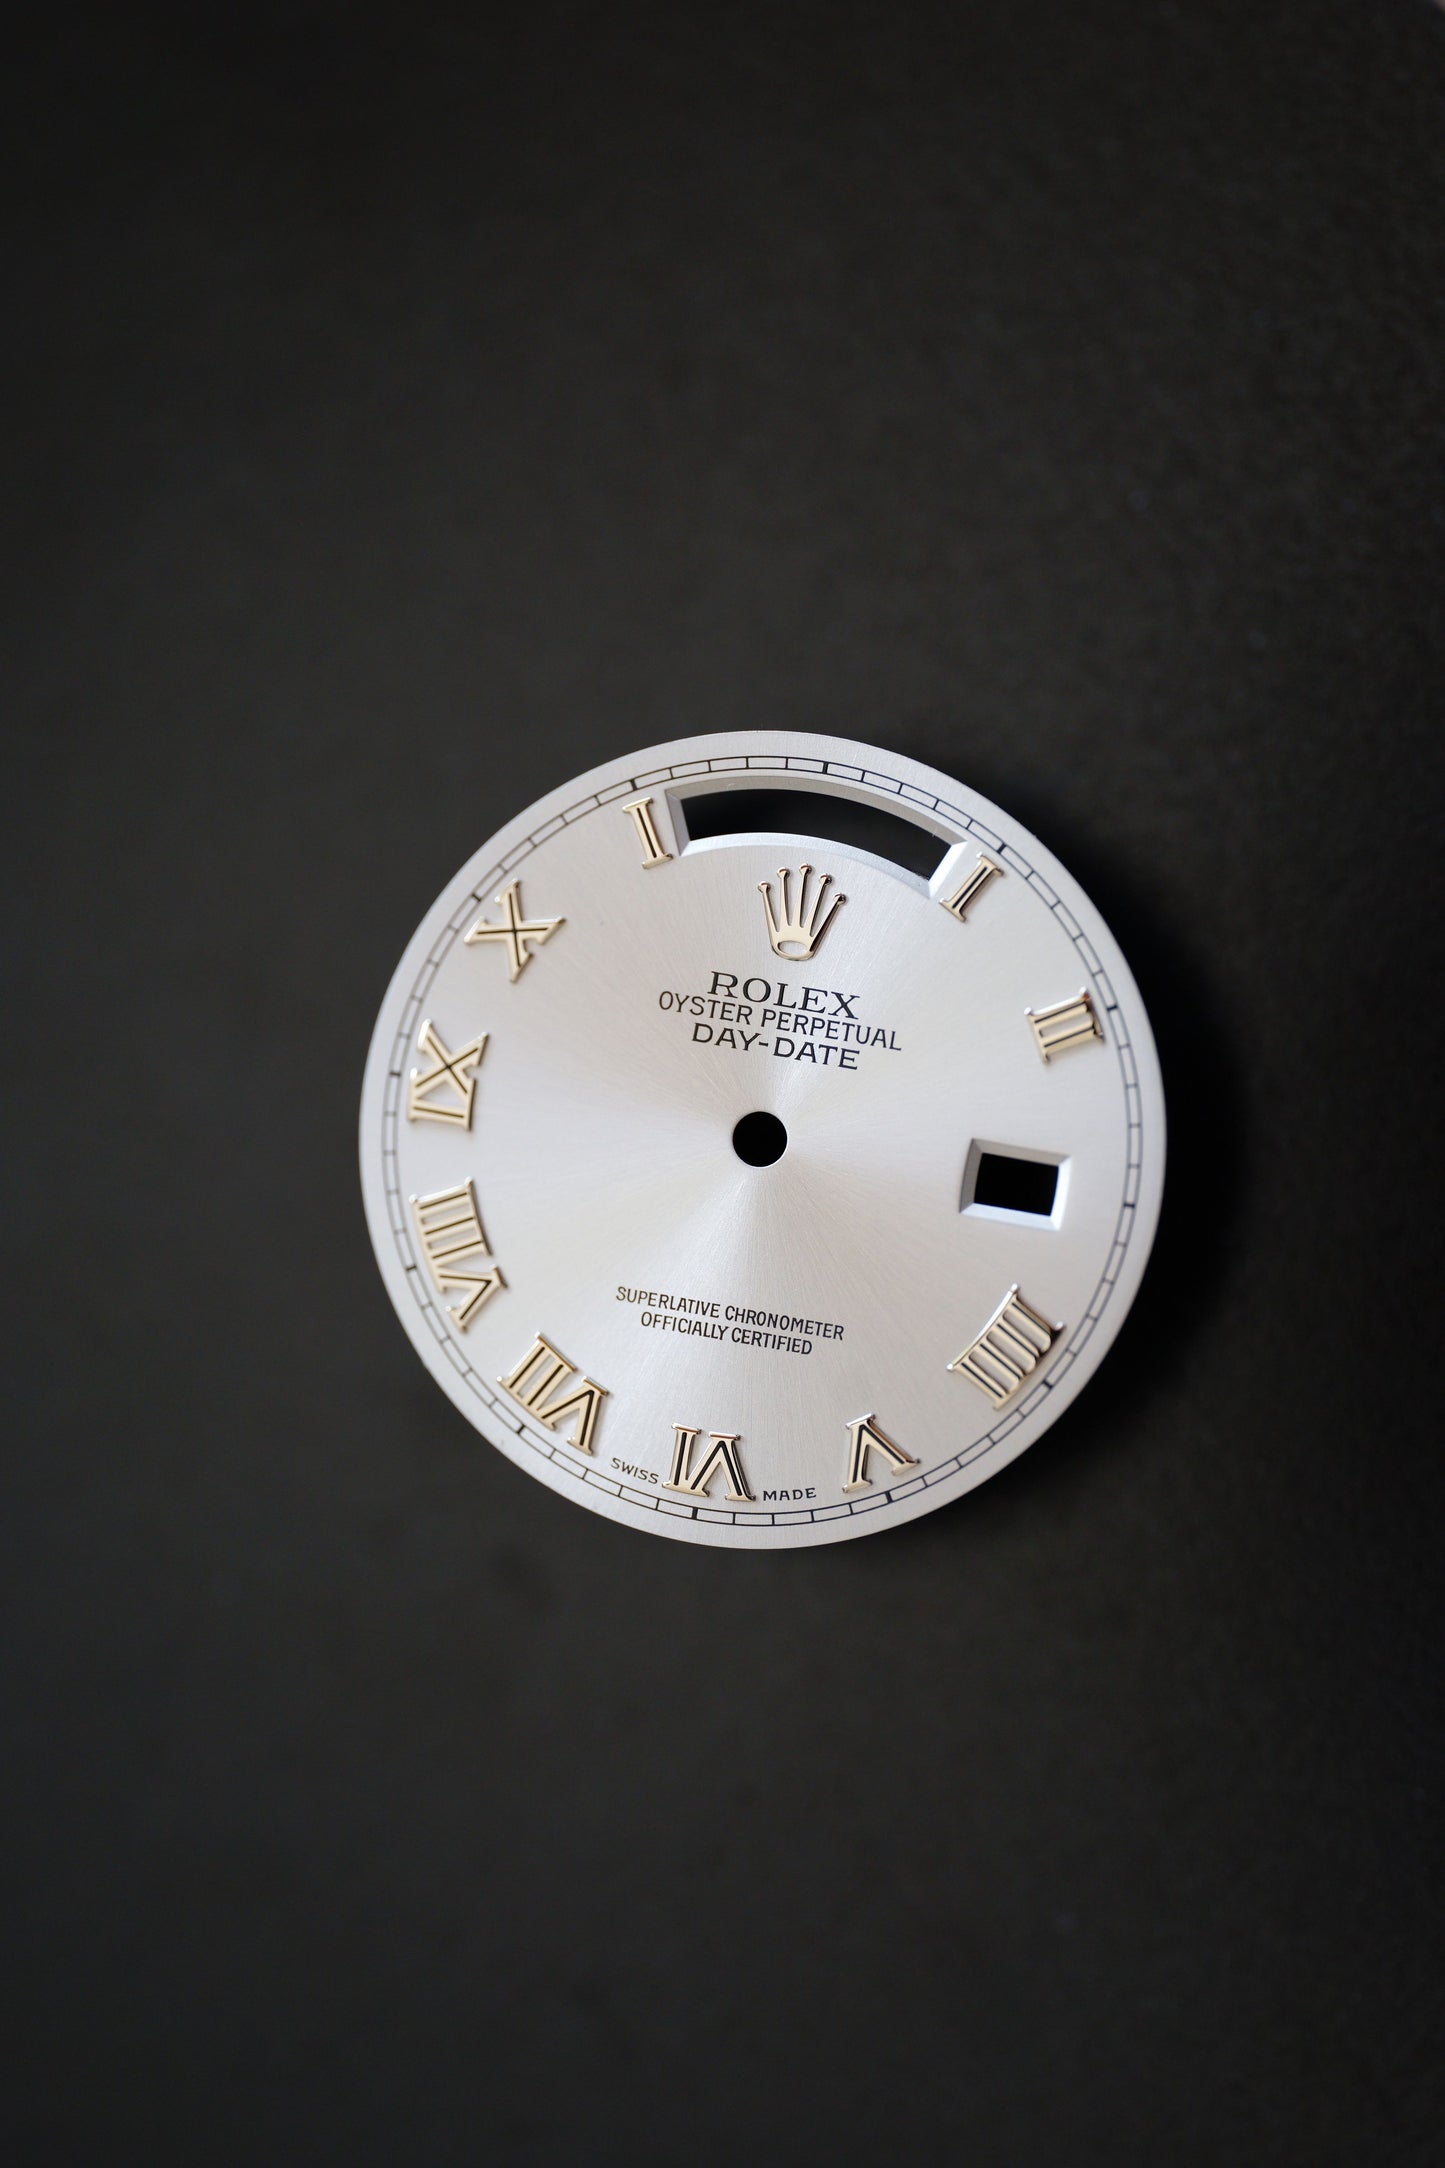 Rolex Roman Zifferblatt (dial) für Day-Date 36 mm 18039 | 18239 | 118239 | 128239 und andere